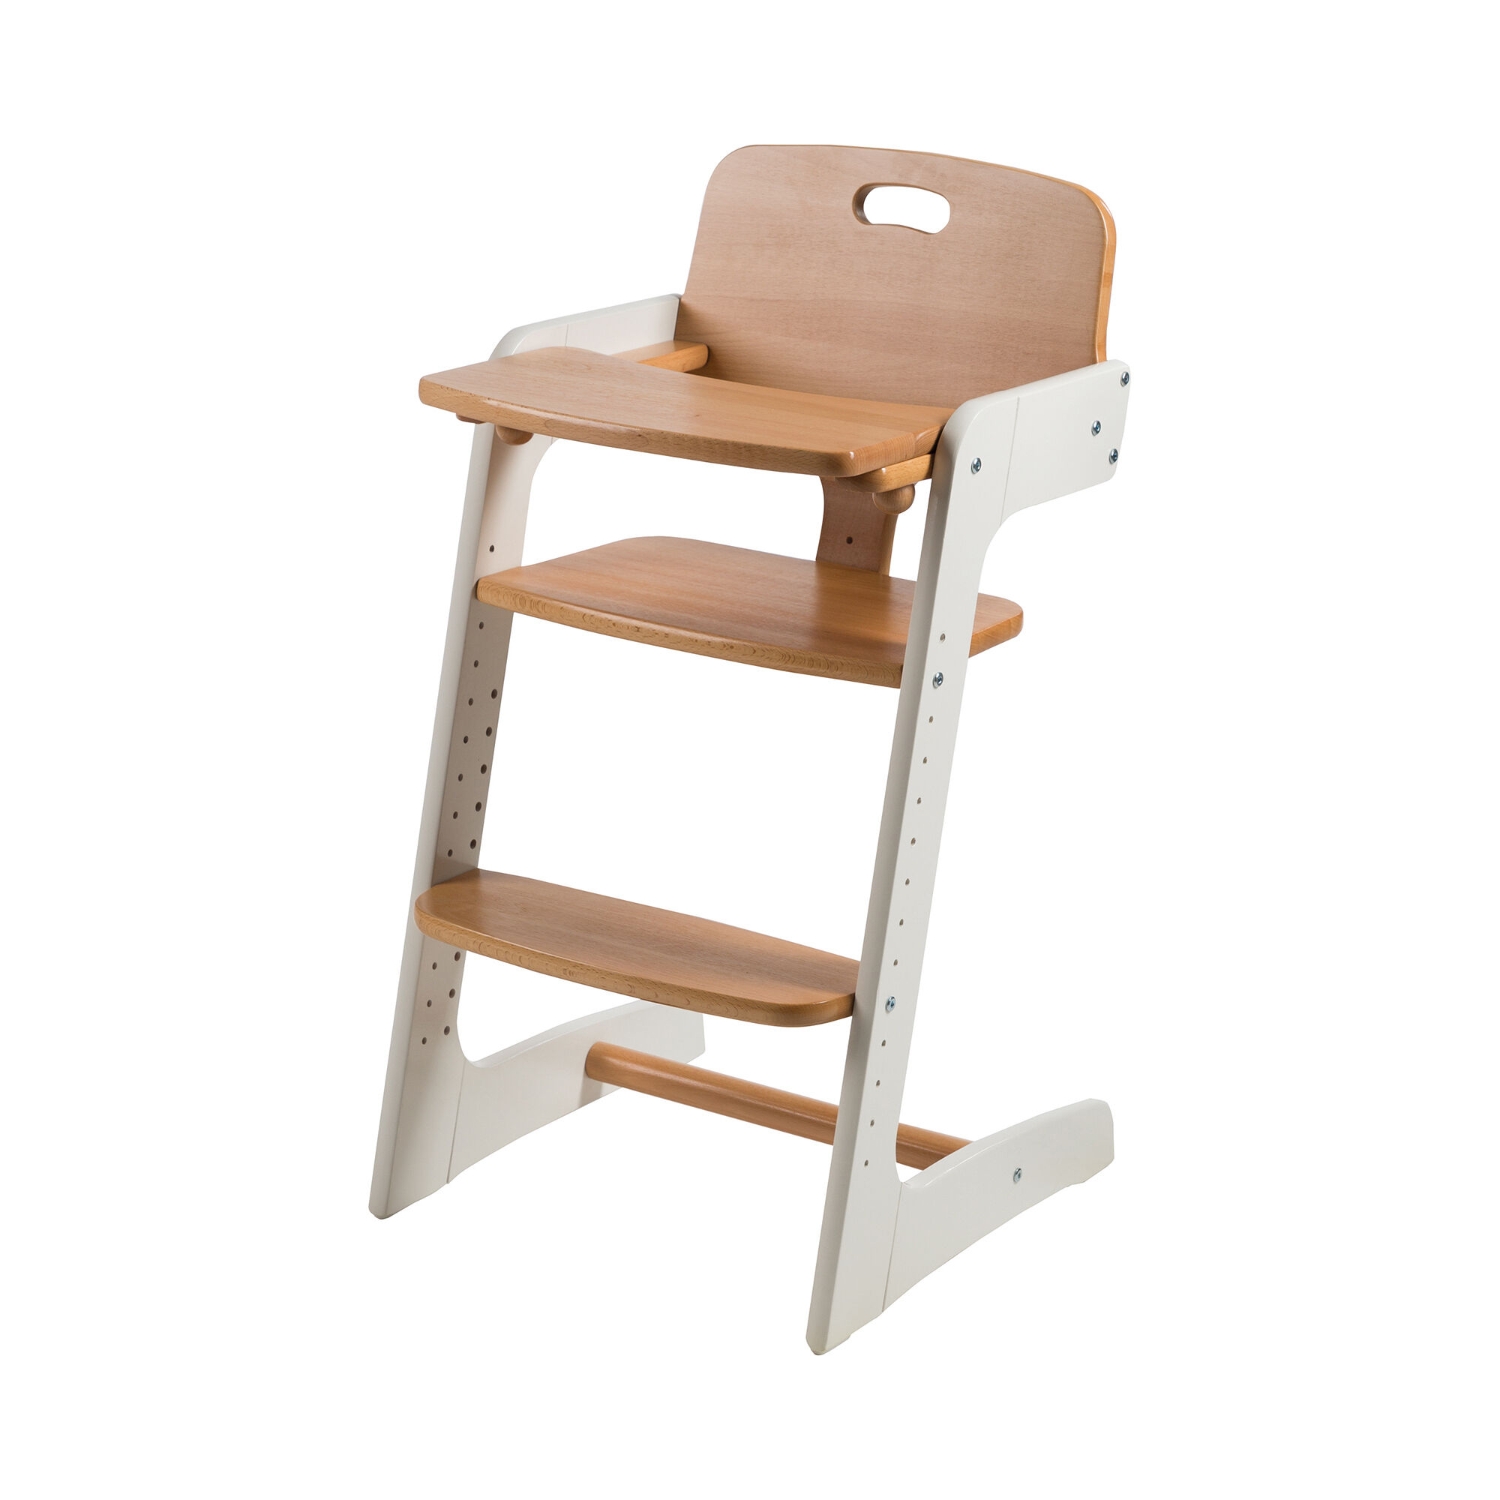 Chaise /siège Bébé -Table de jeu évolutive pour bébé - Table et